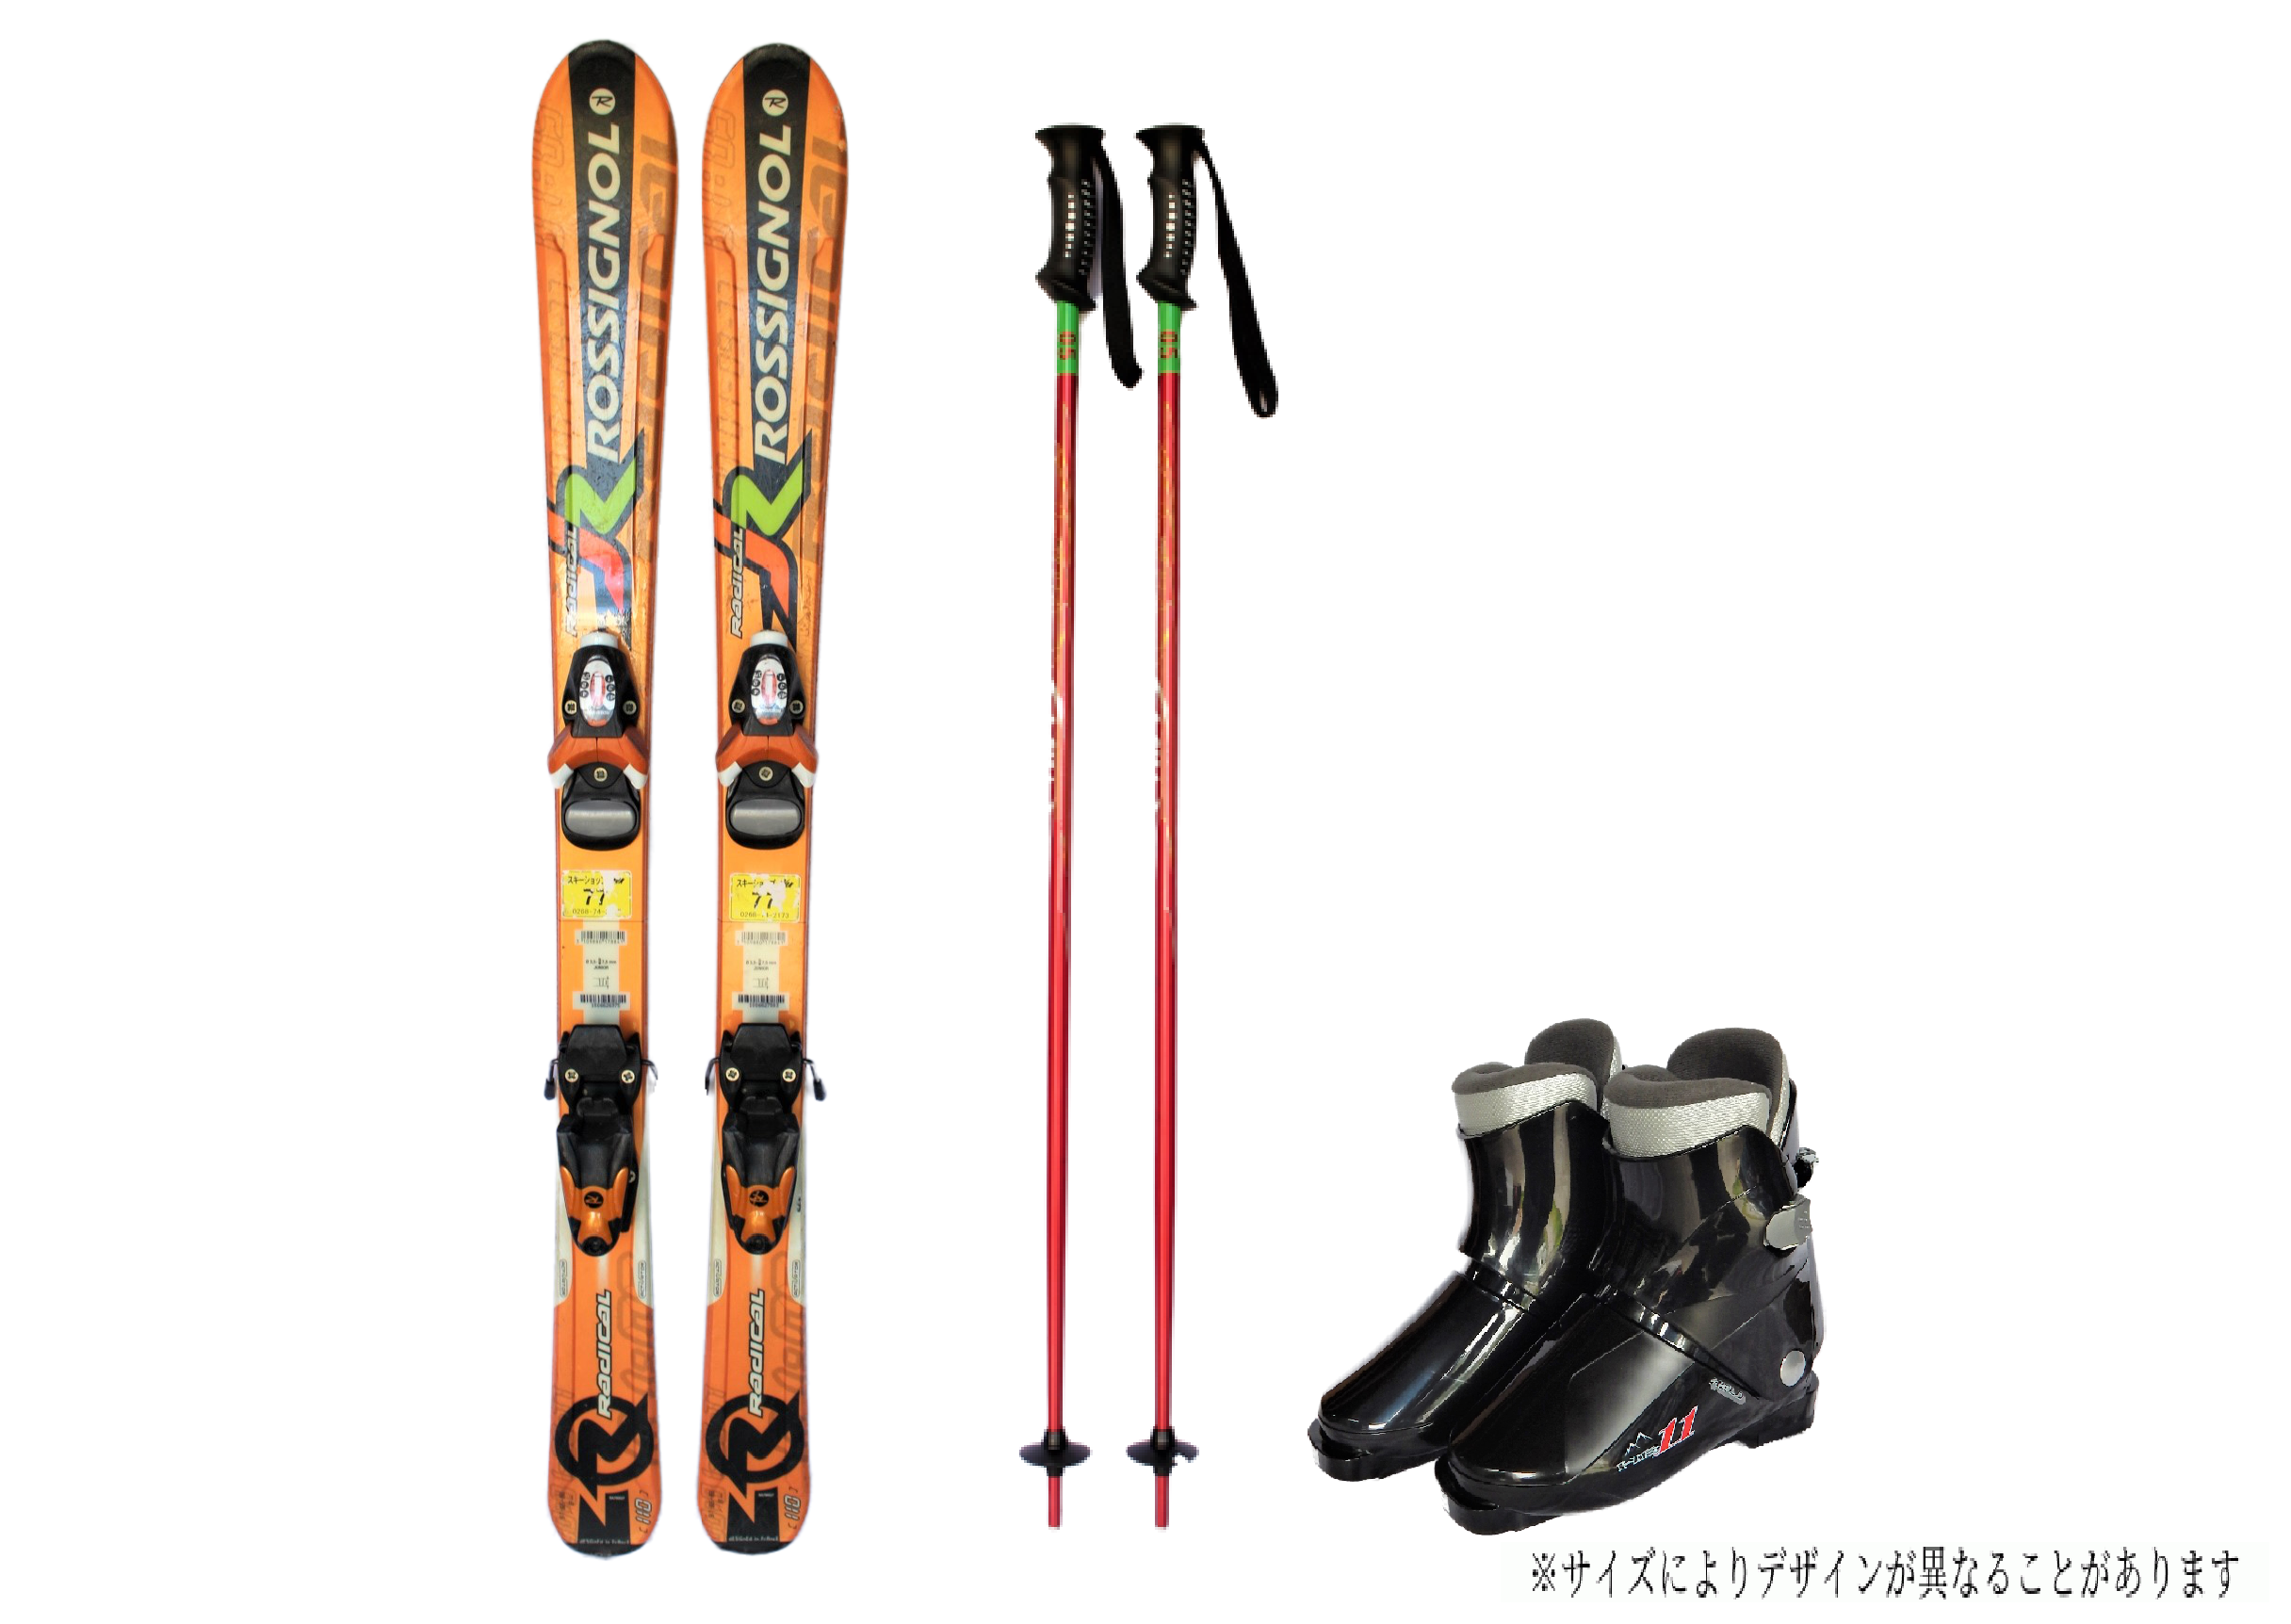 【1月開催スキー・スノーボードツアー】レンタルスキー・レンタルスノーボード申込ページ